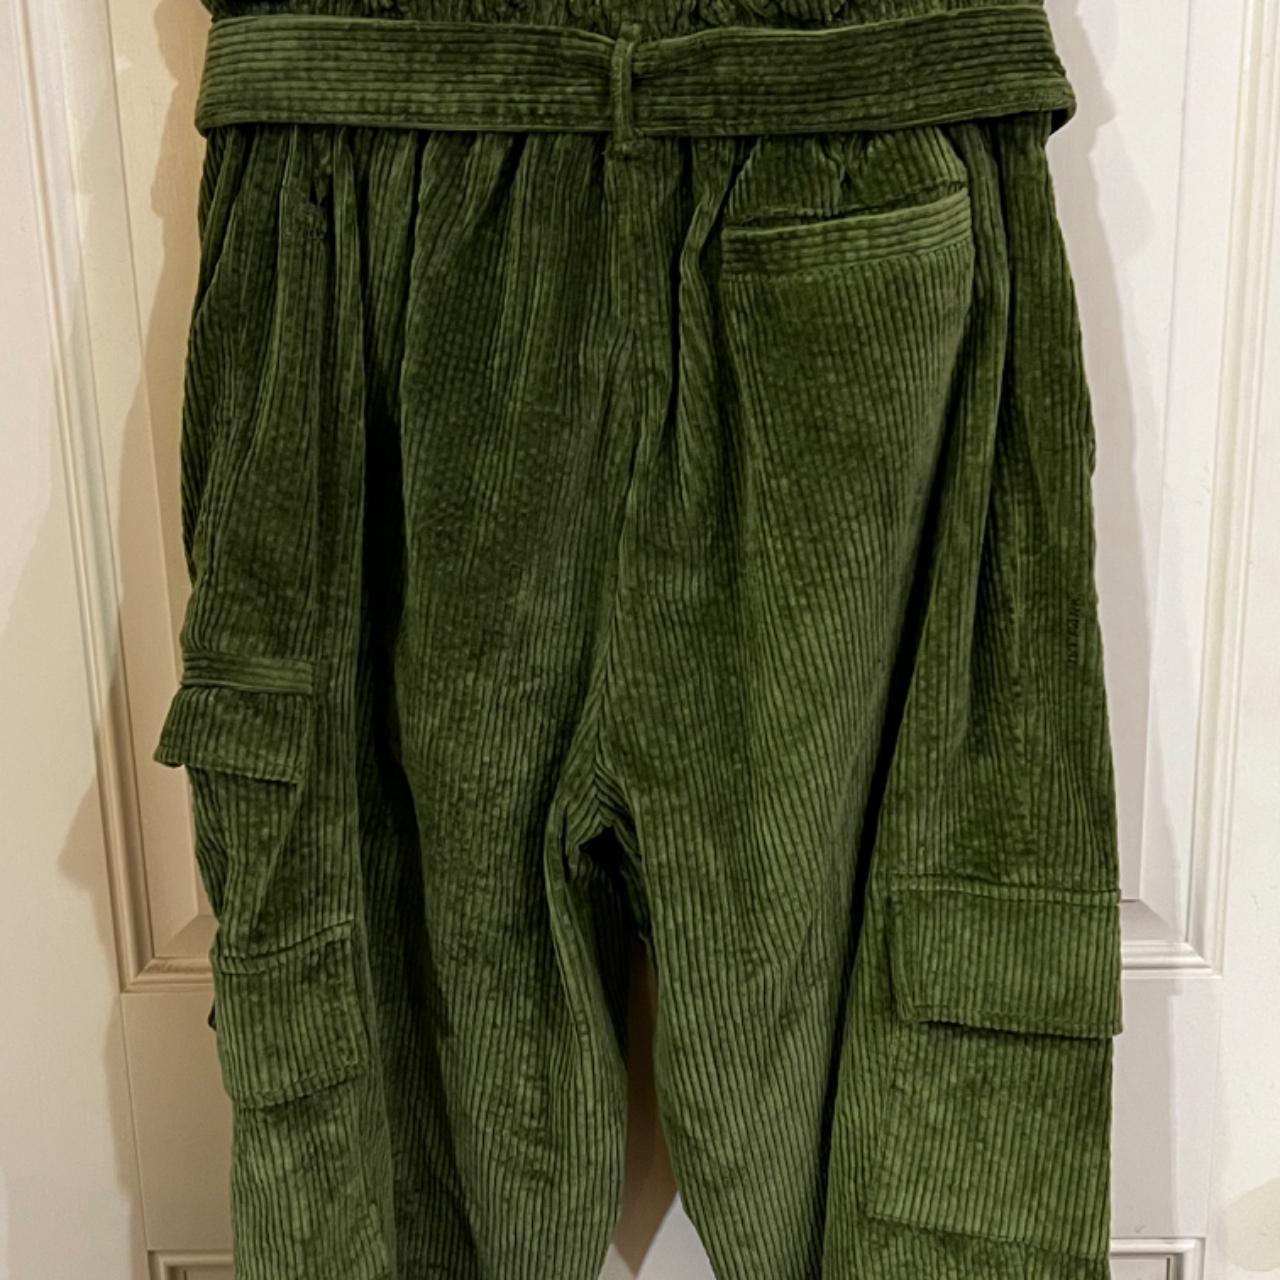 adidas x IVY PARK Green Corduroy Zipper Cargo Pants adidas x IVY PARK